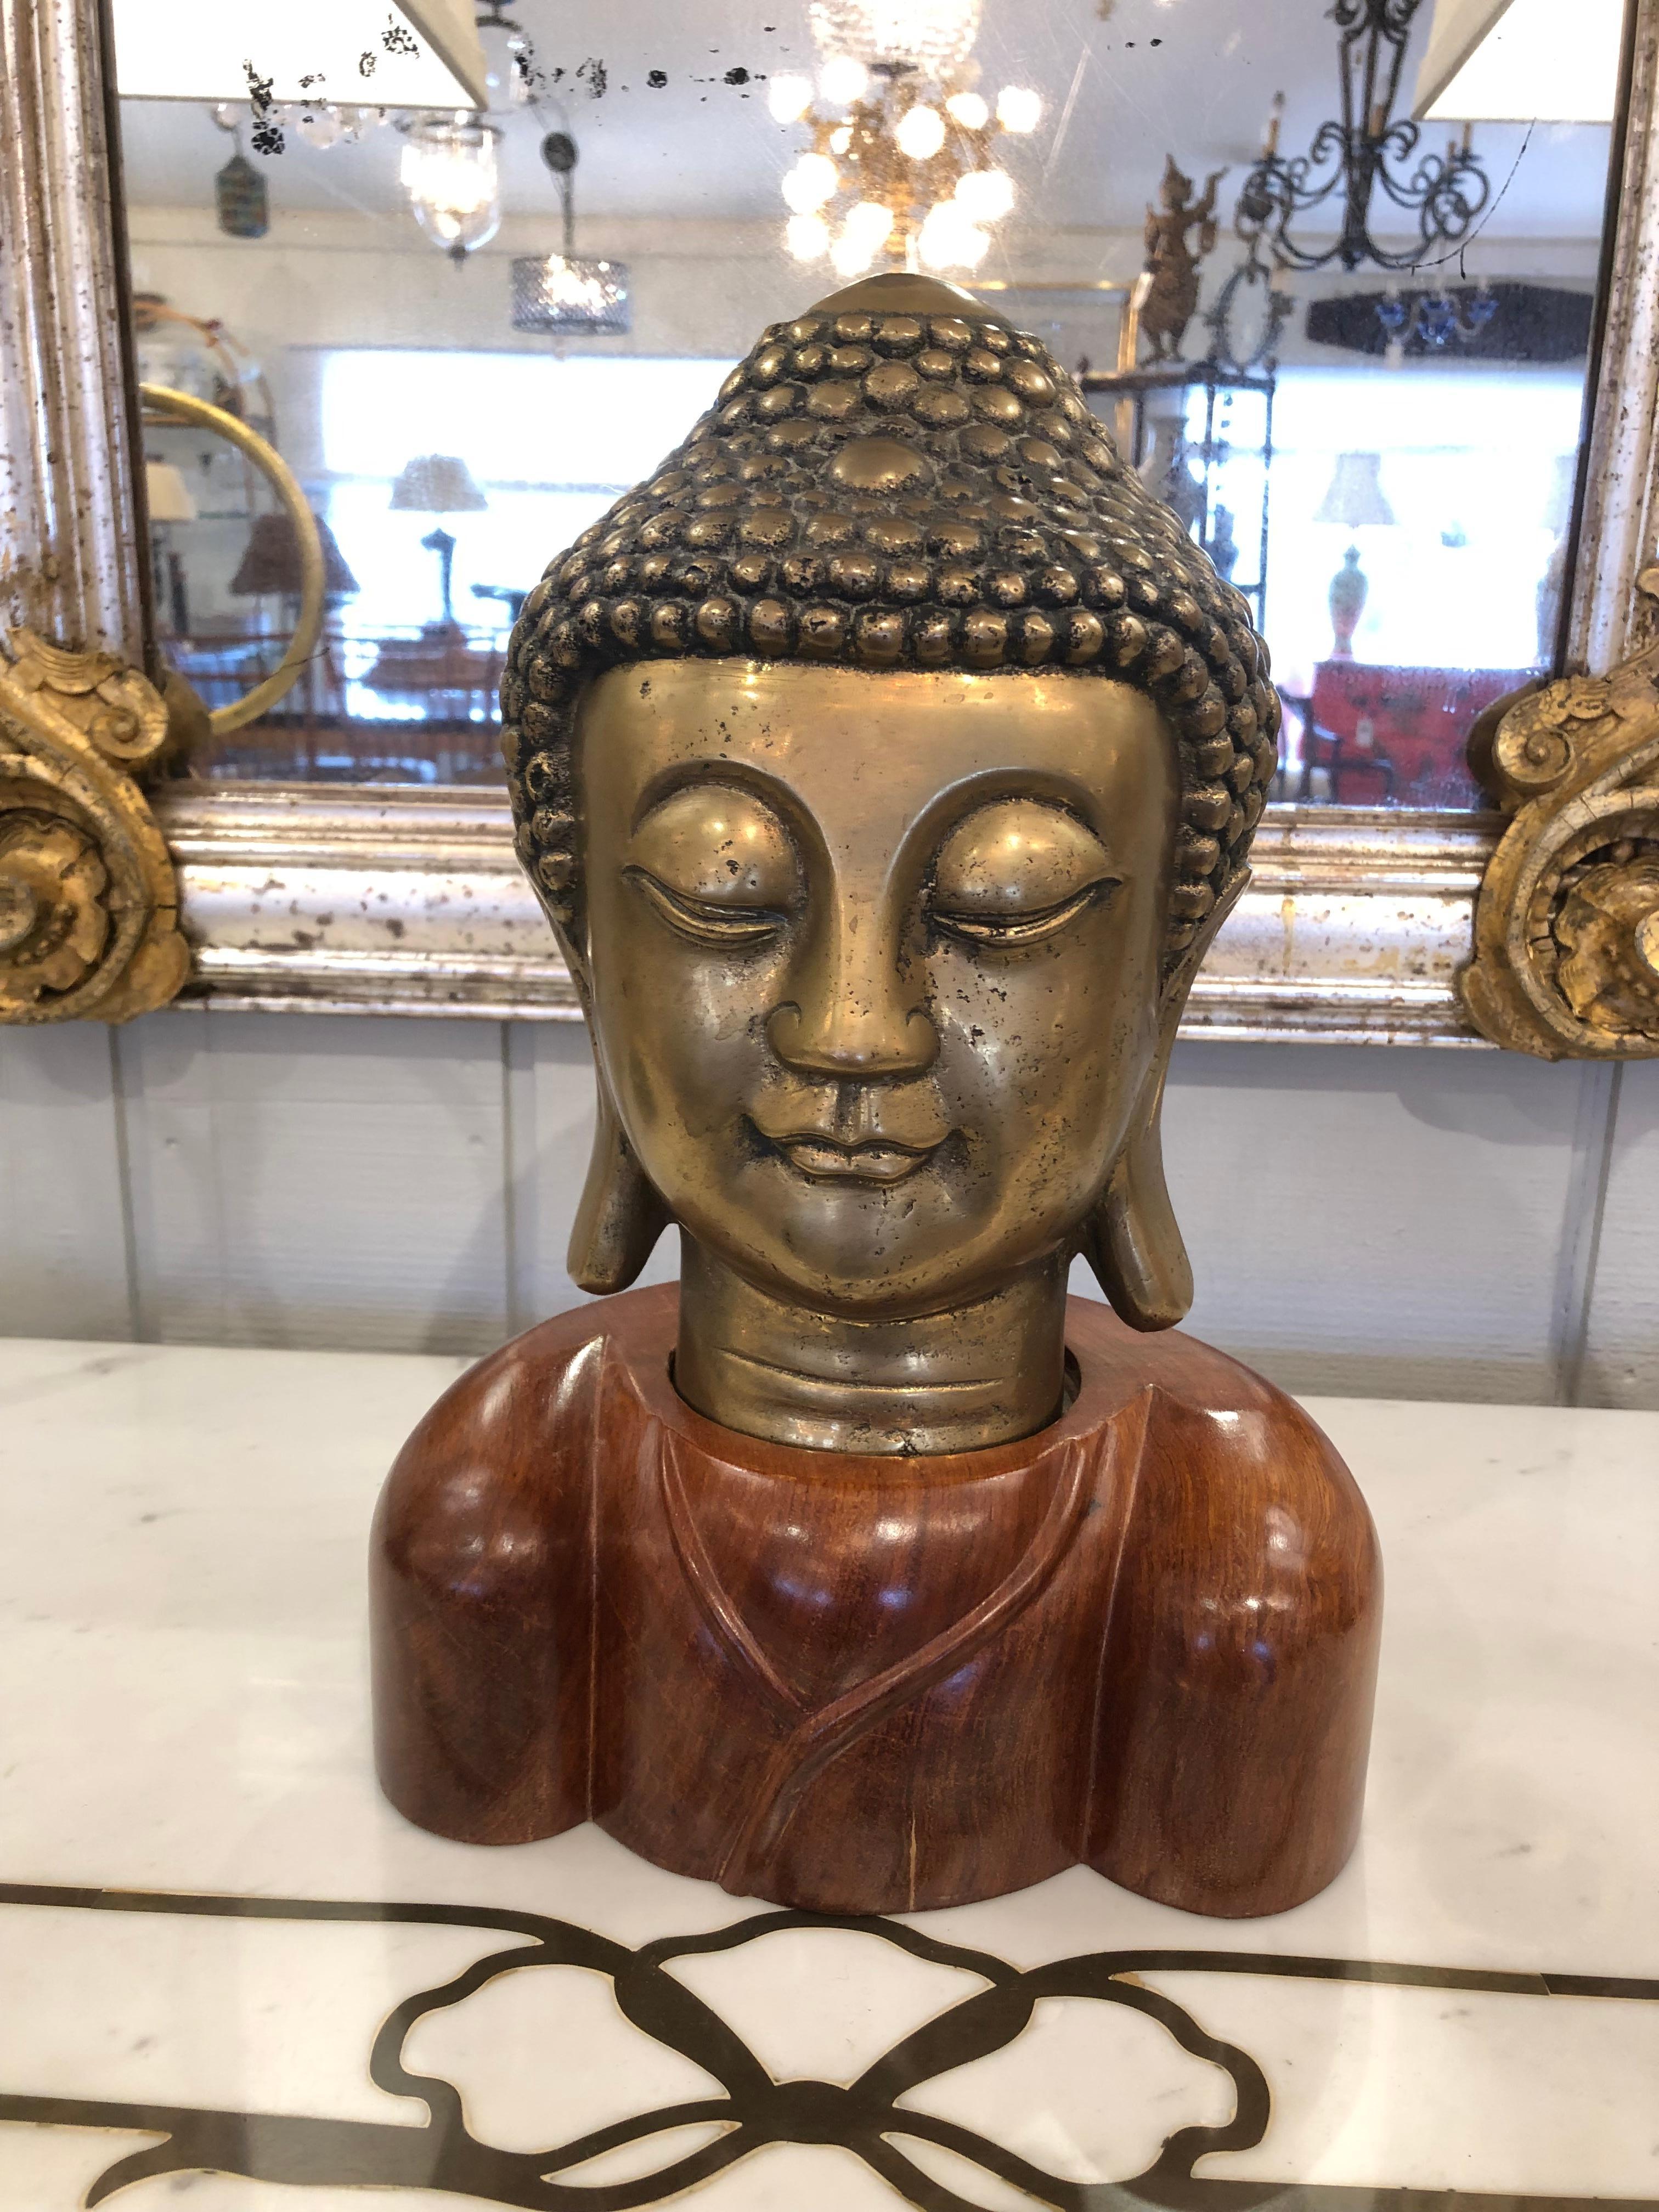 Tête de bouddha remarquable avec un buste en bronze méticuleusement détaillé et une base en bois magnifiquement grainé.